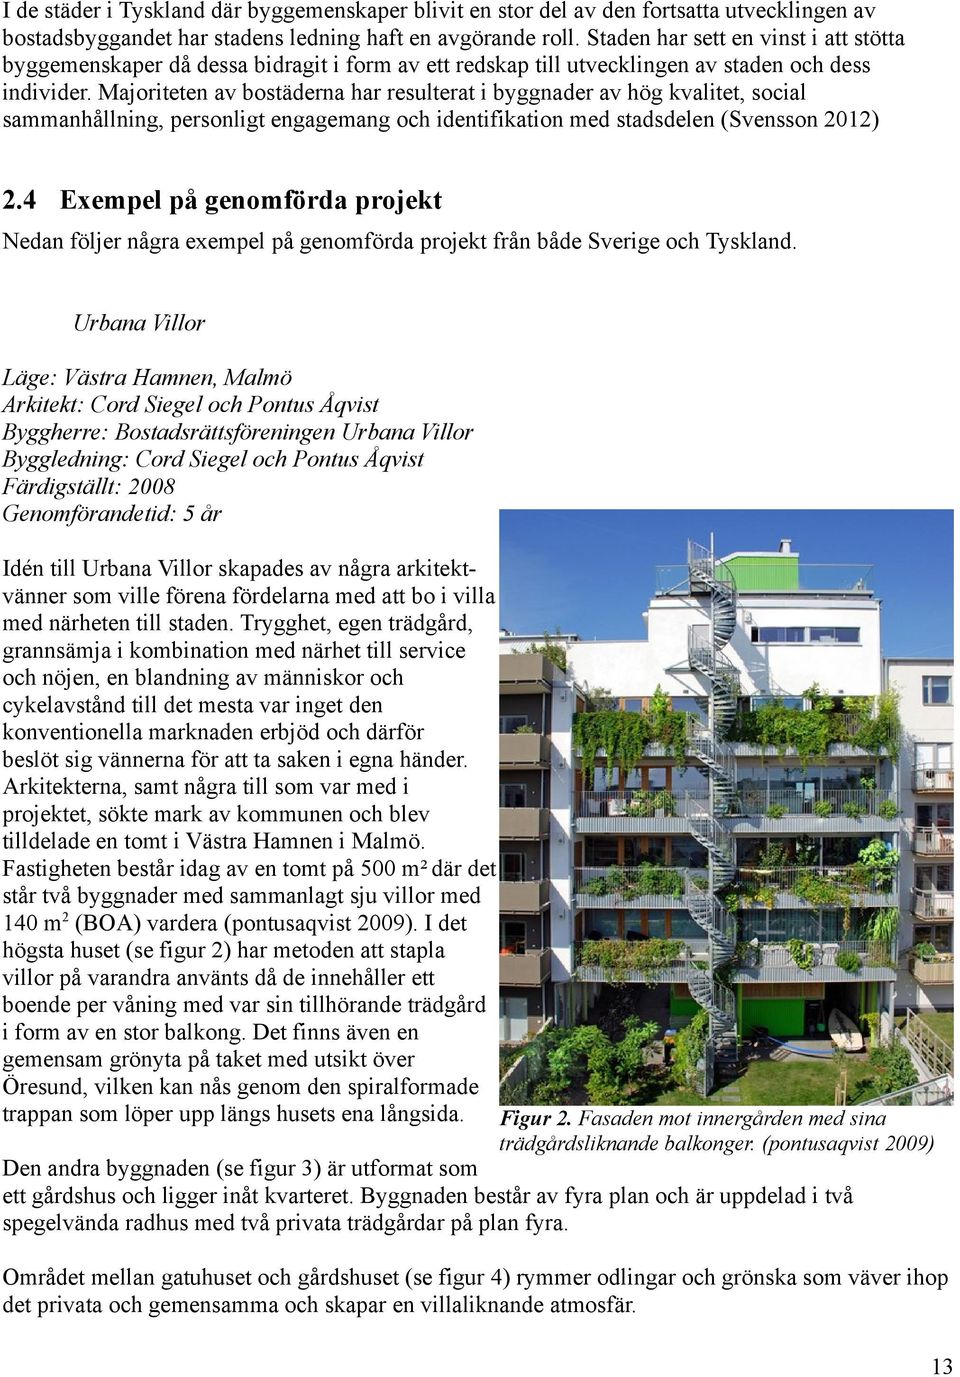 Majoriteten av bostäderna har resulterat i byggnader av hög kvalitet, social sammanhållning, personligt engagemang och identifikation med stadsdelen (Svensson 2012) 2.